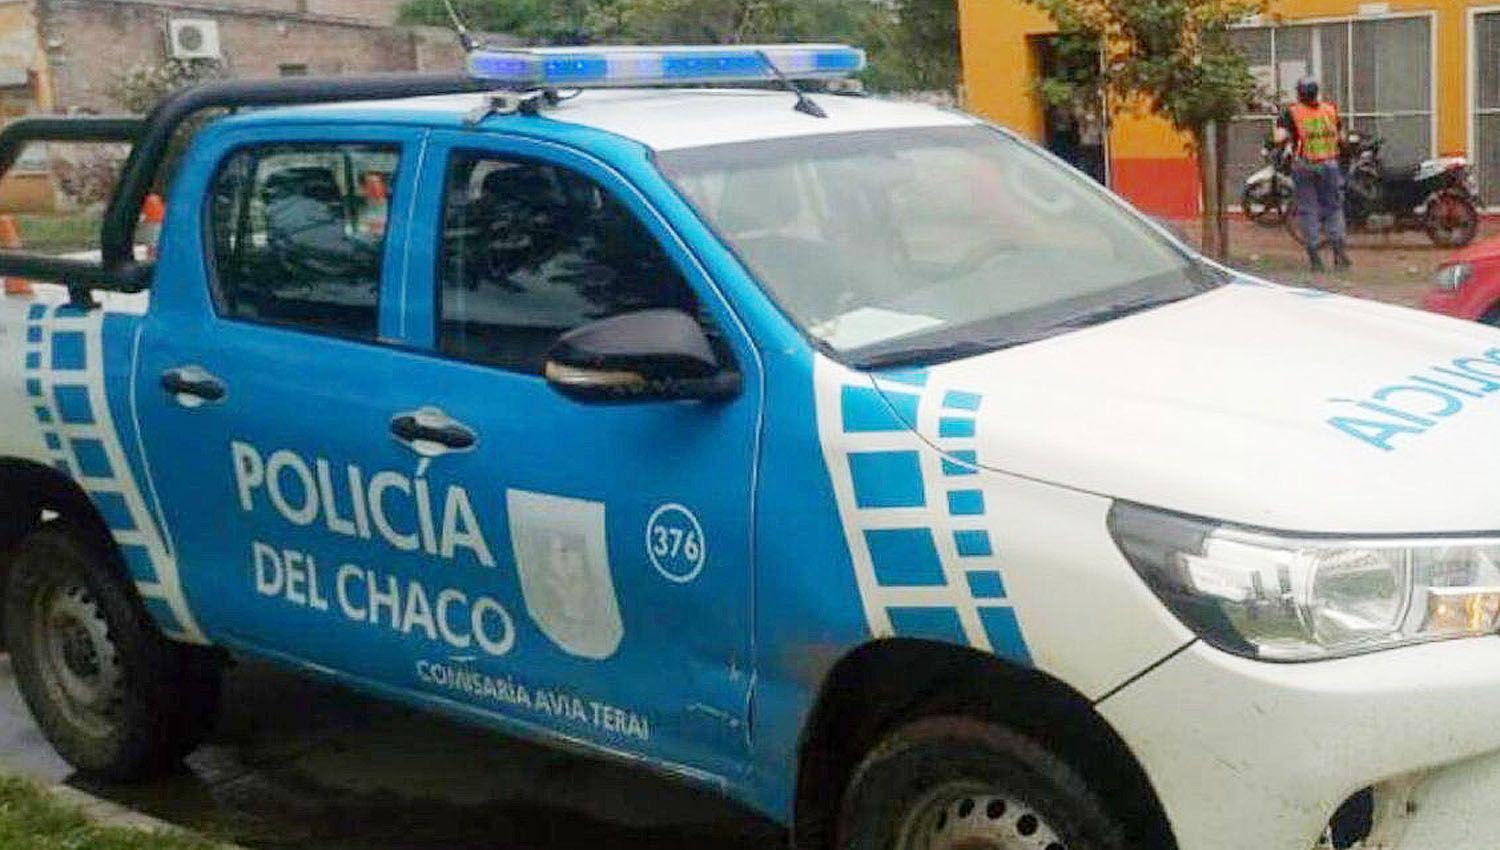 La Policiacutea de Chaco encontroacute sano y salvo a un santiaguentildeo desaparecido en el 2021